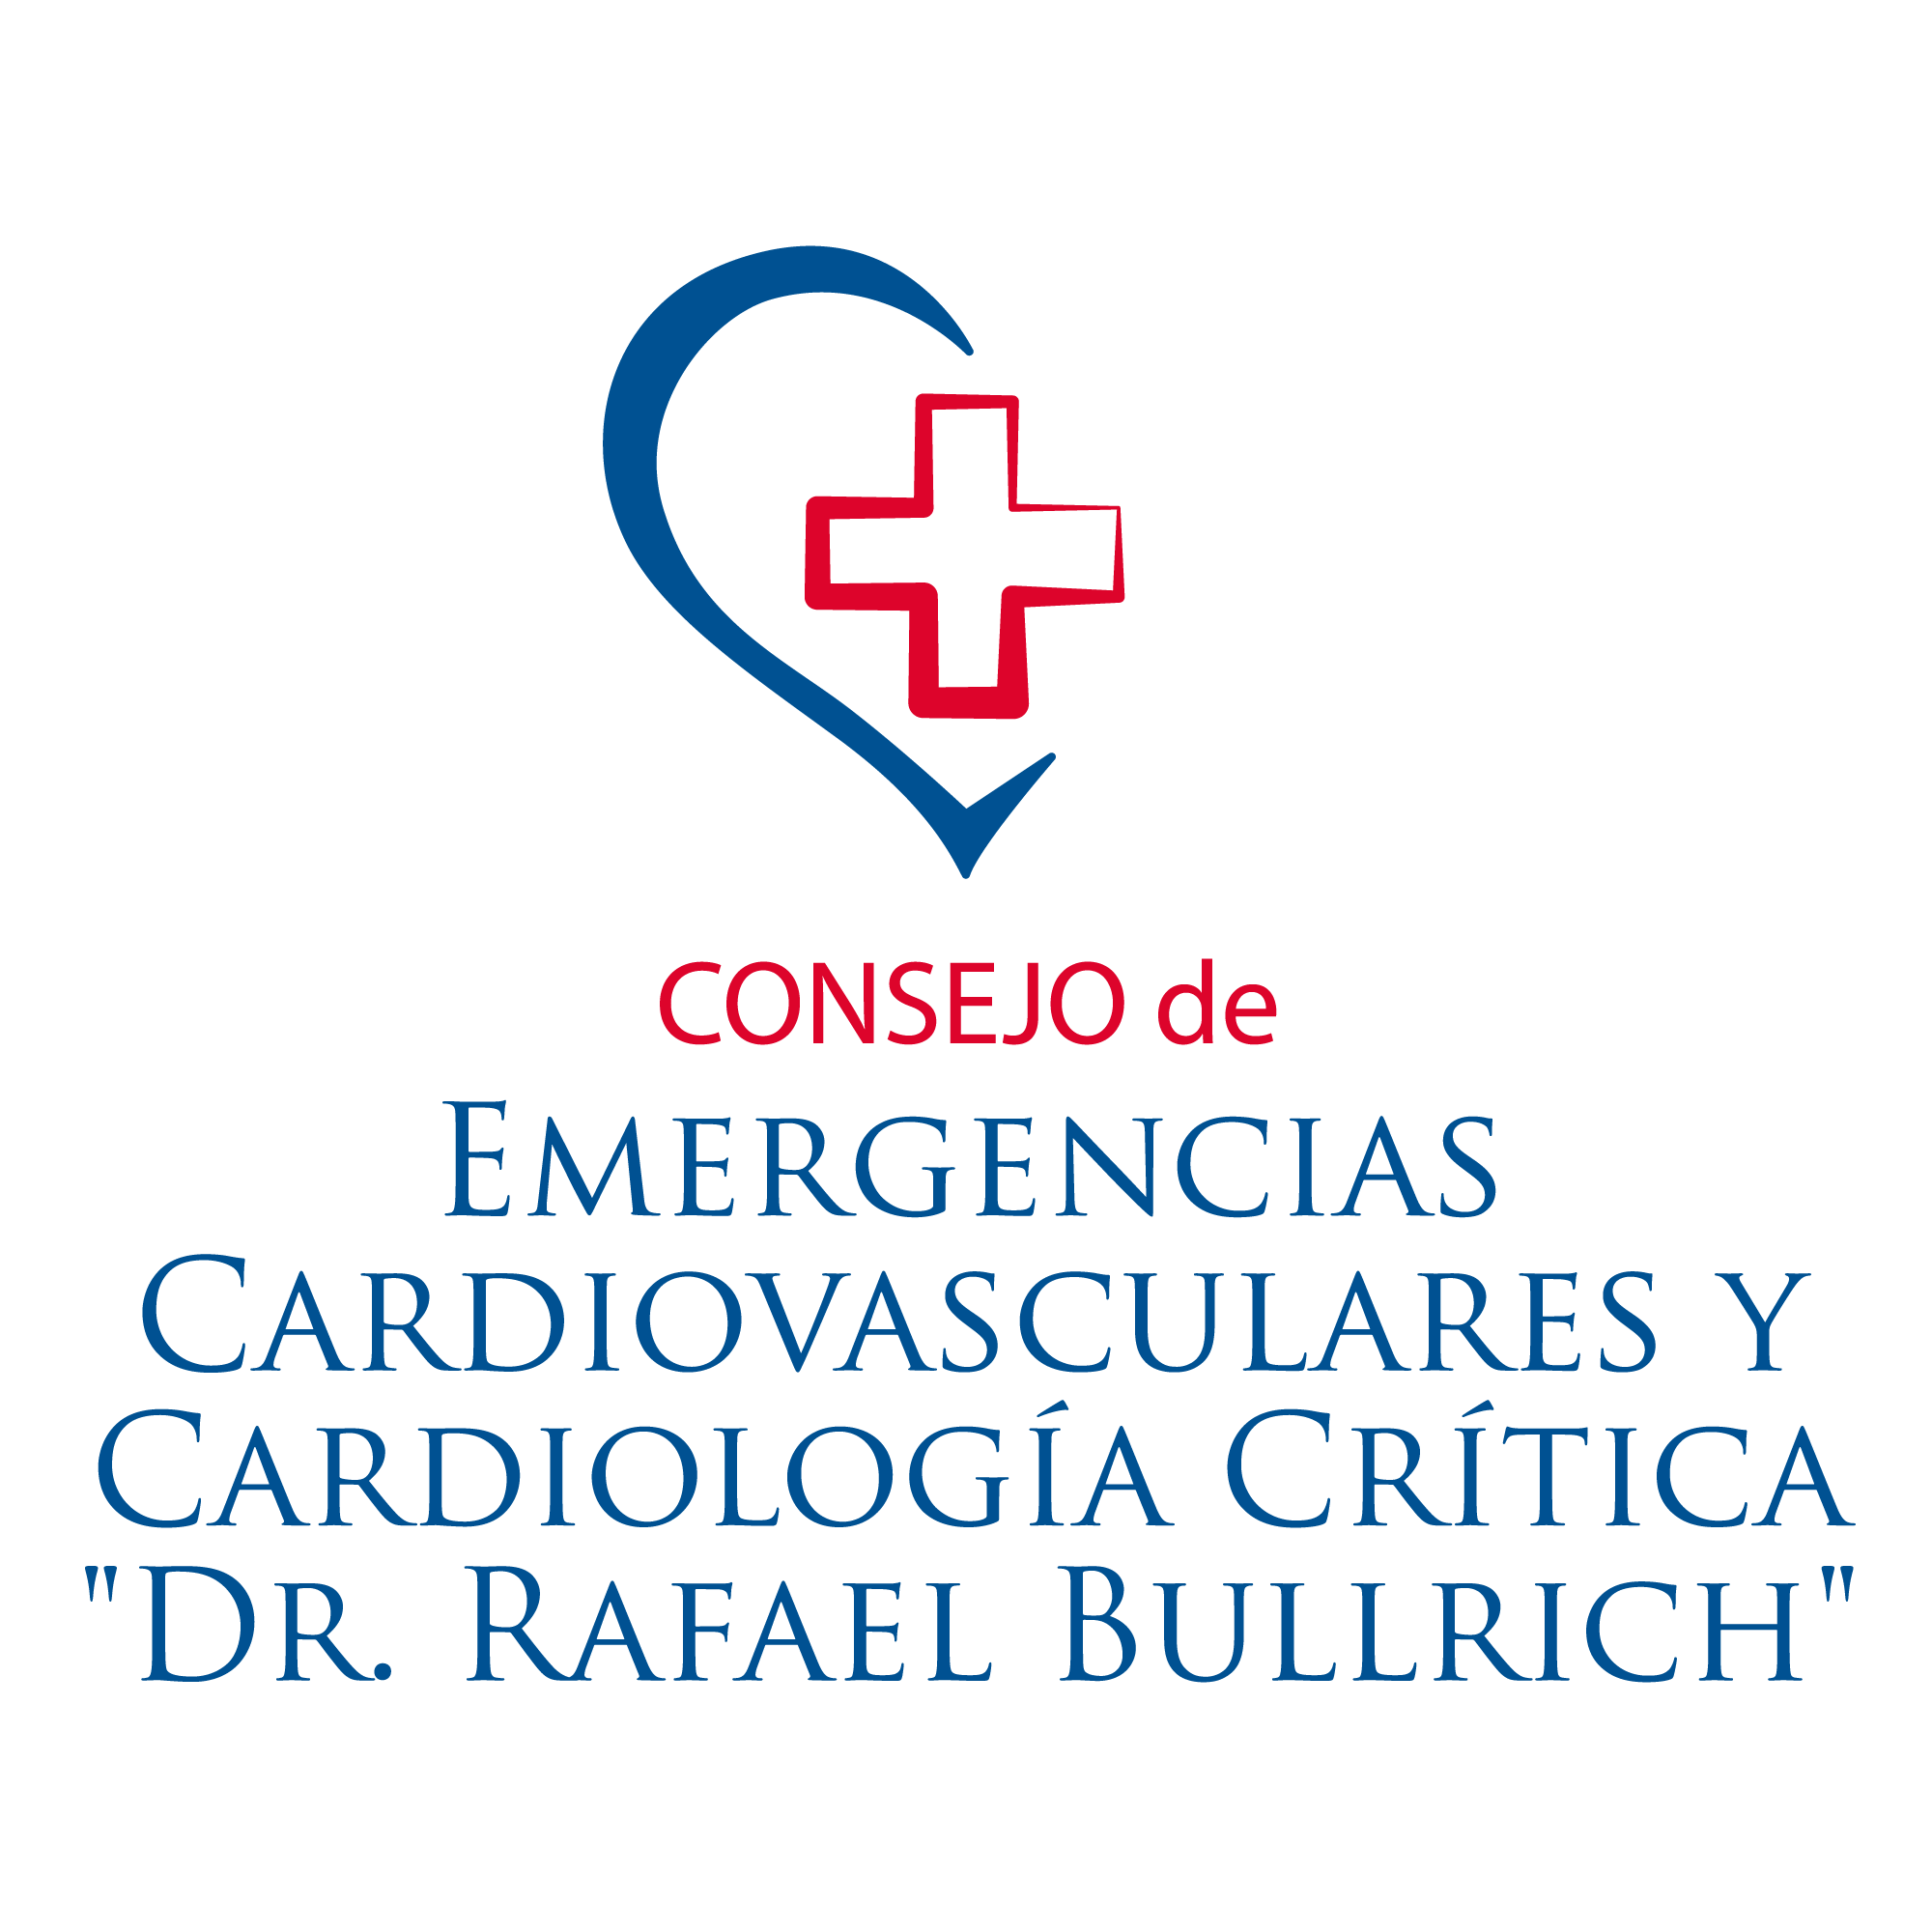 Consejo de Emergencias Cardiovasculares y Cardiología Crítica "Dr. Rafael Bullrich"